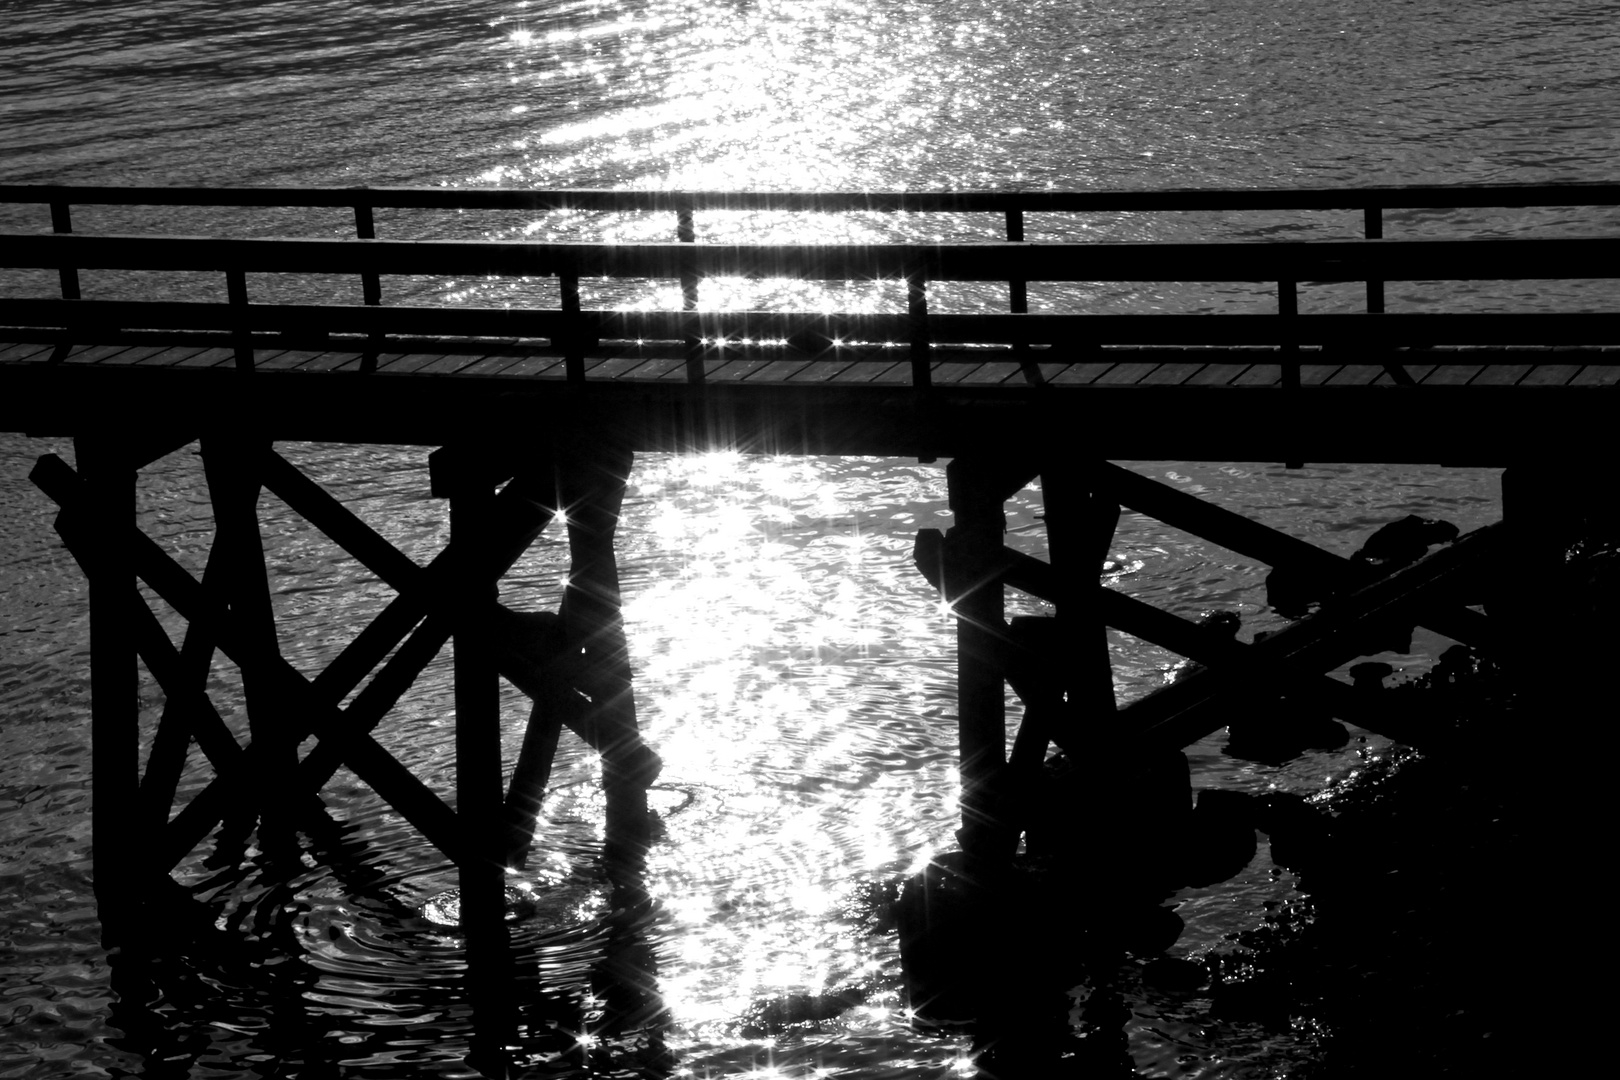 Holzbrücke beim Sonnenuntergang -wooden bridge at sunset